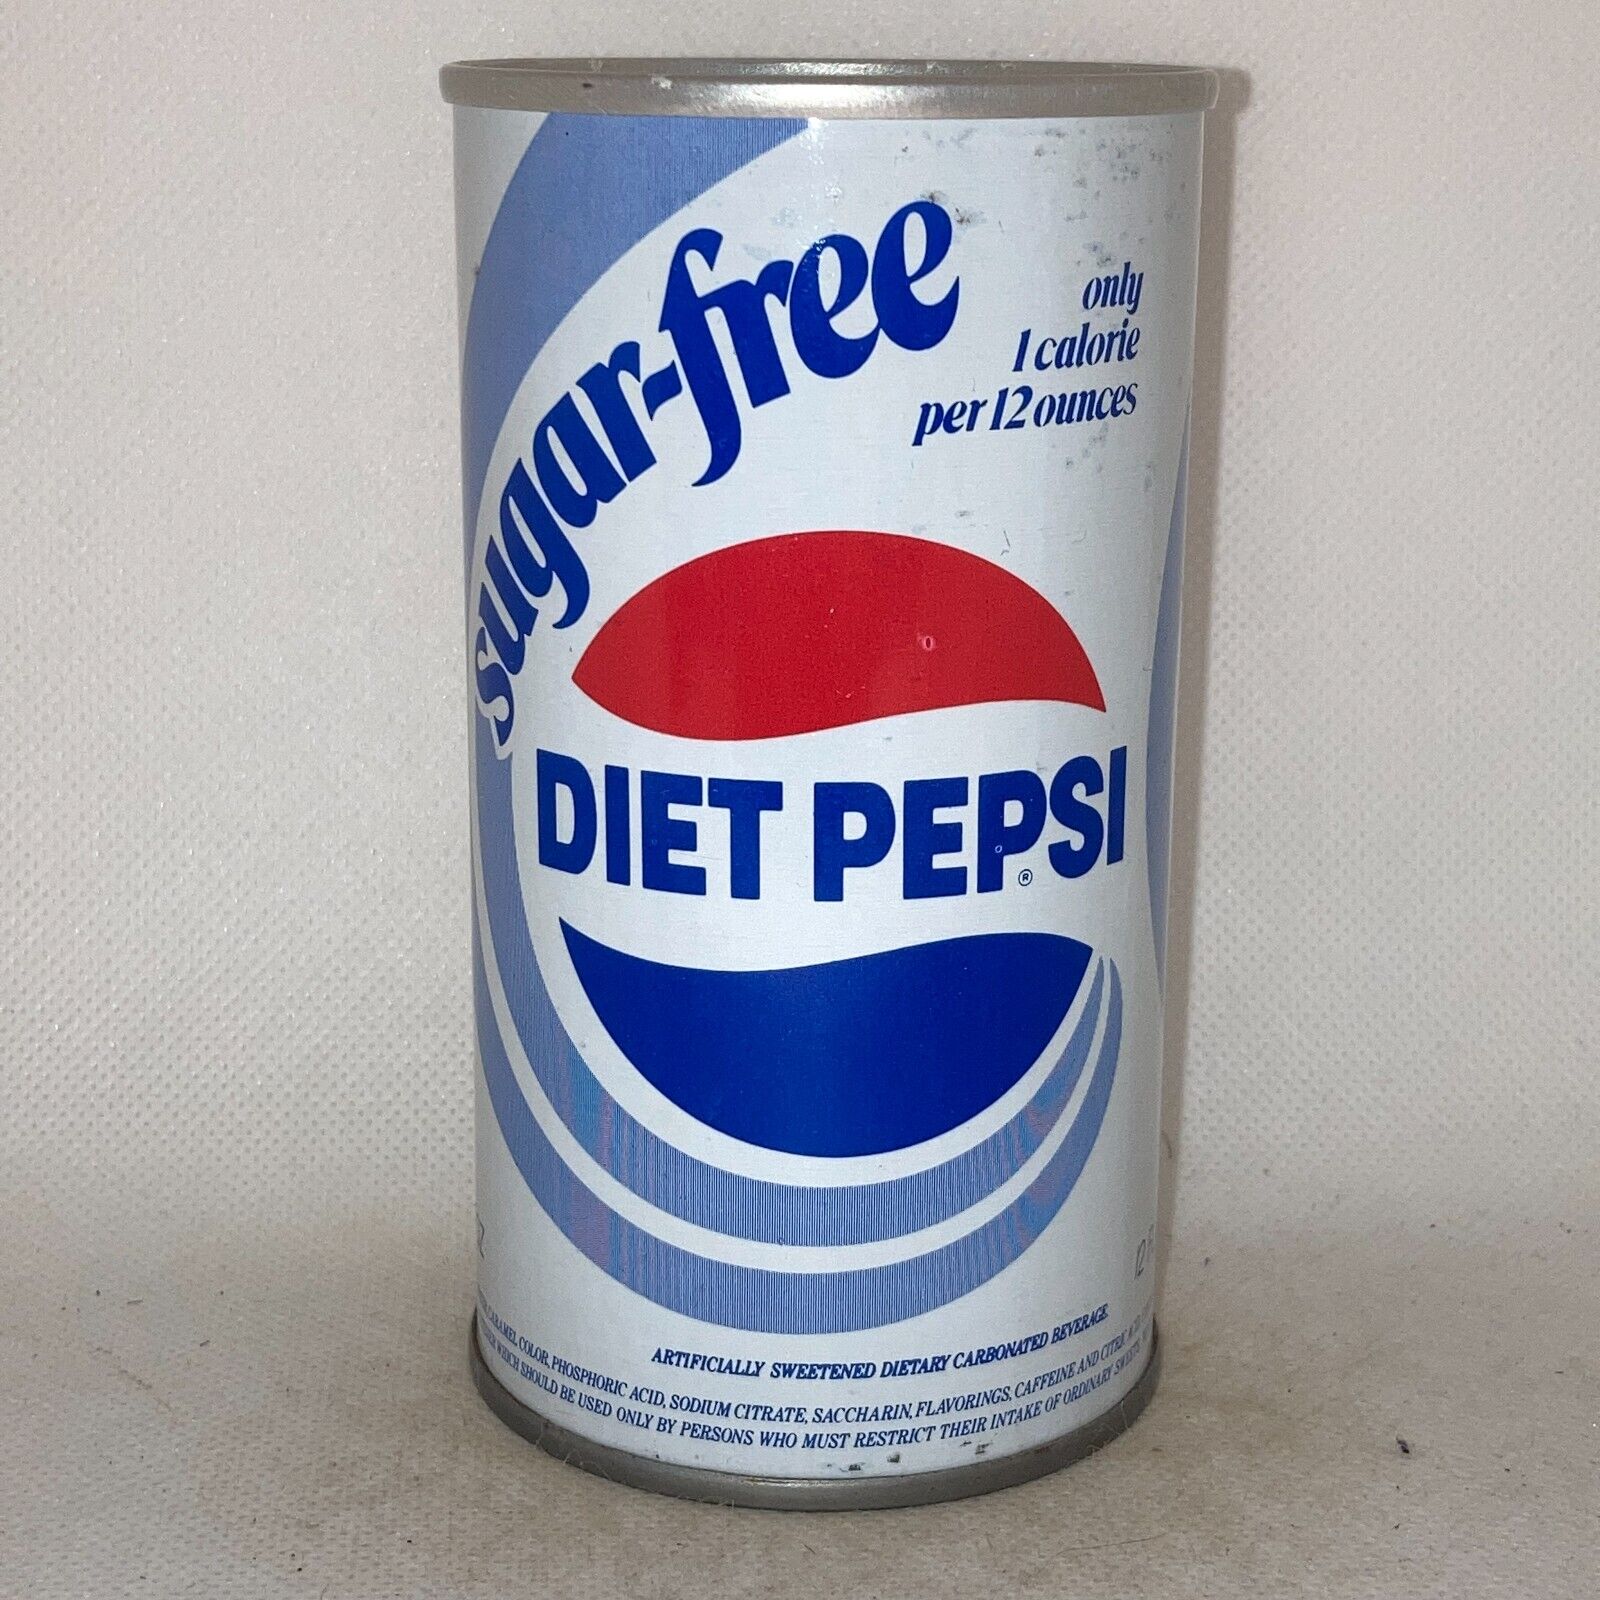 Sugar-Free Diet Pepsi Cola soda can, wide seam